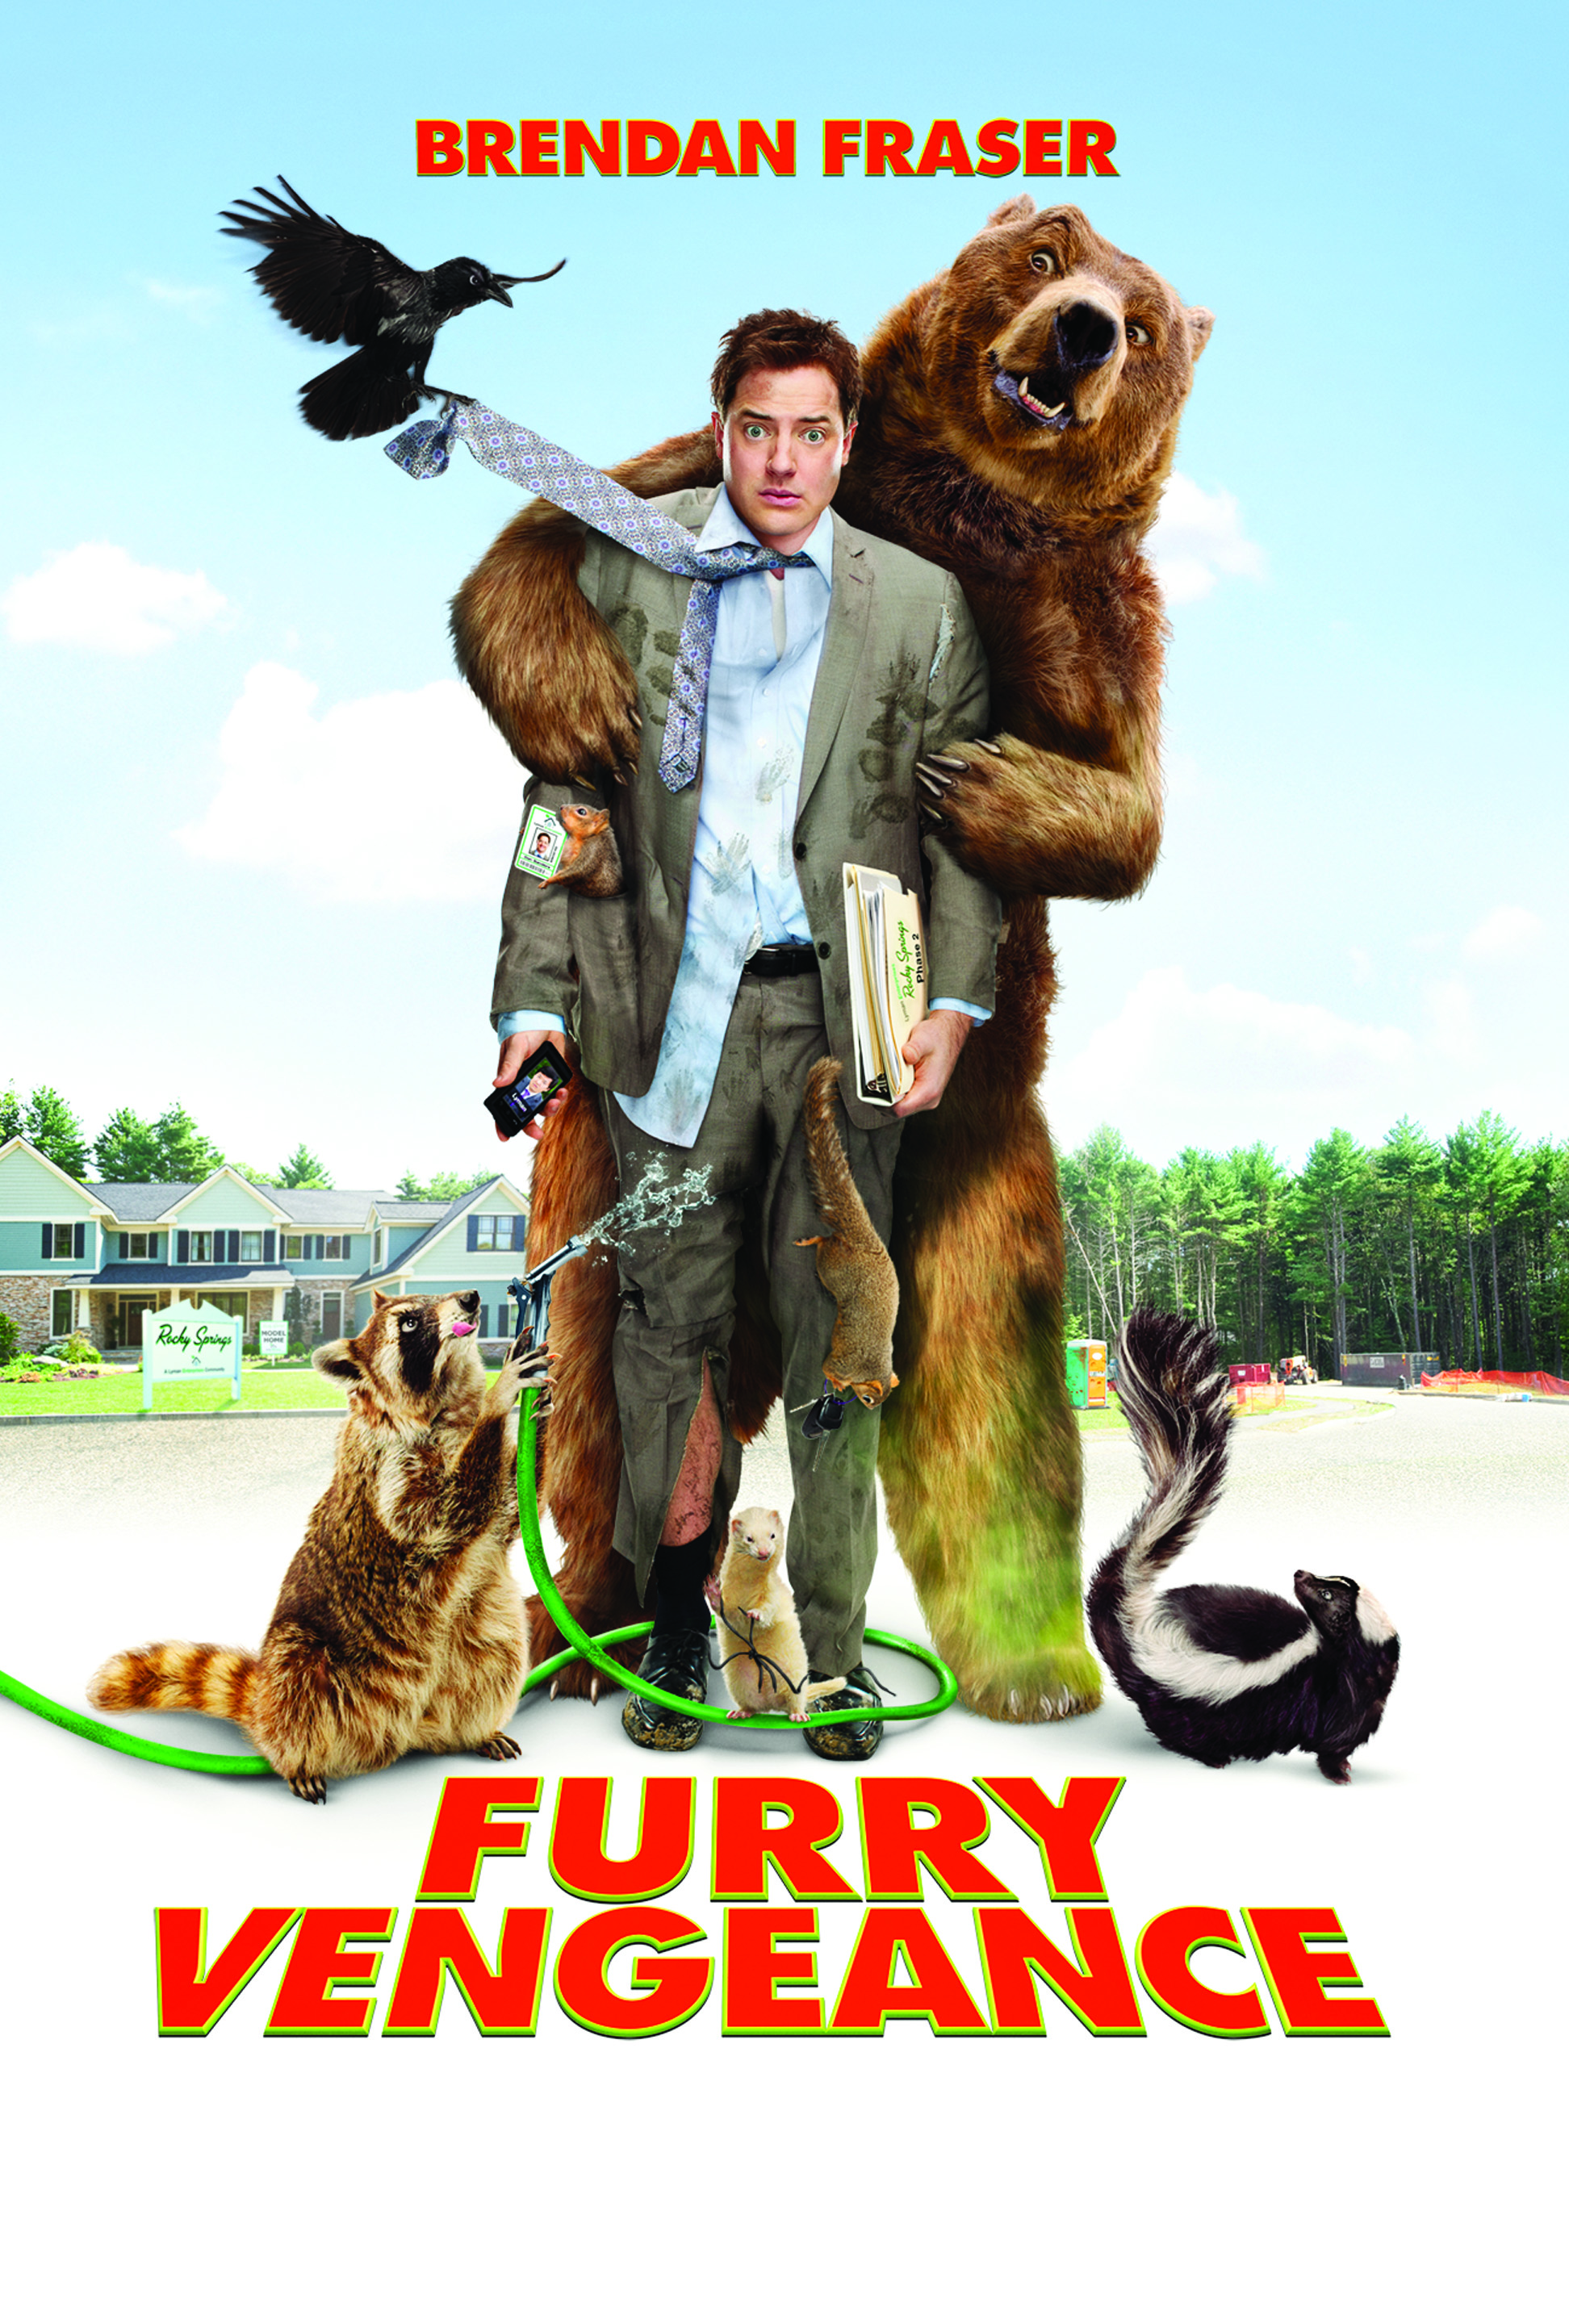 Furry Vengeance-Brendan Fraser 